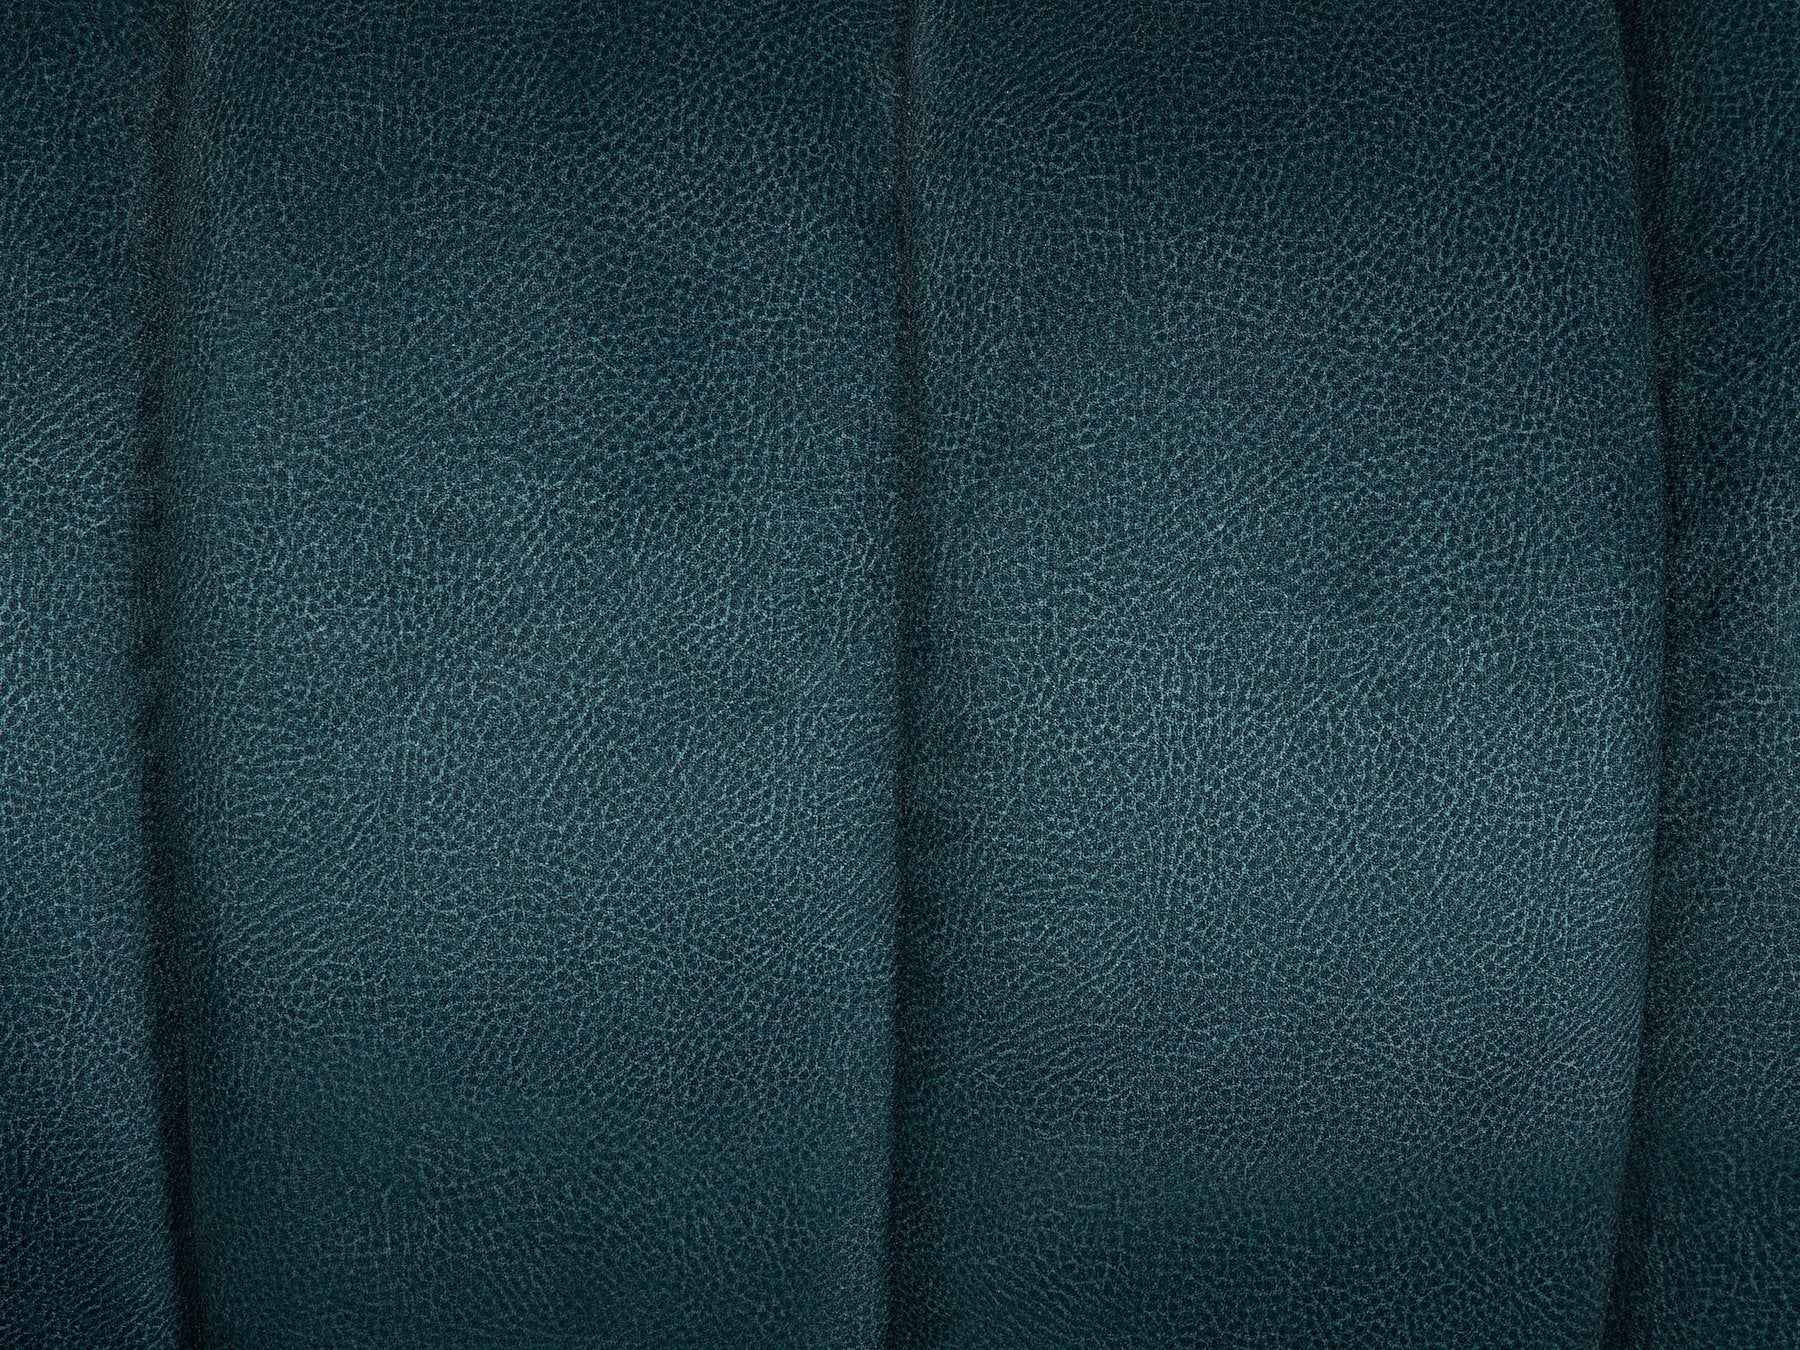 Gaula Fabric Upholstered Sofa (Teal)